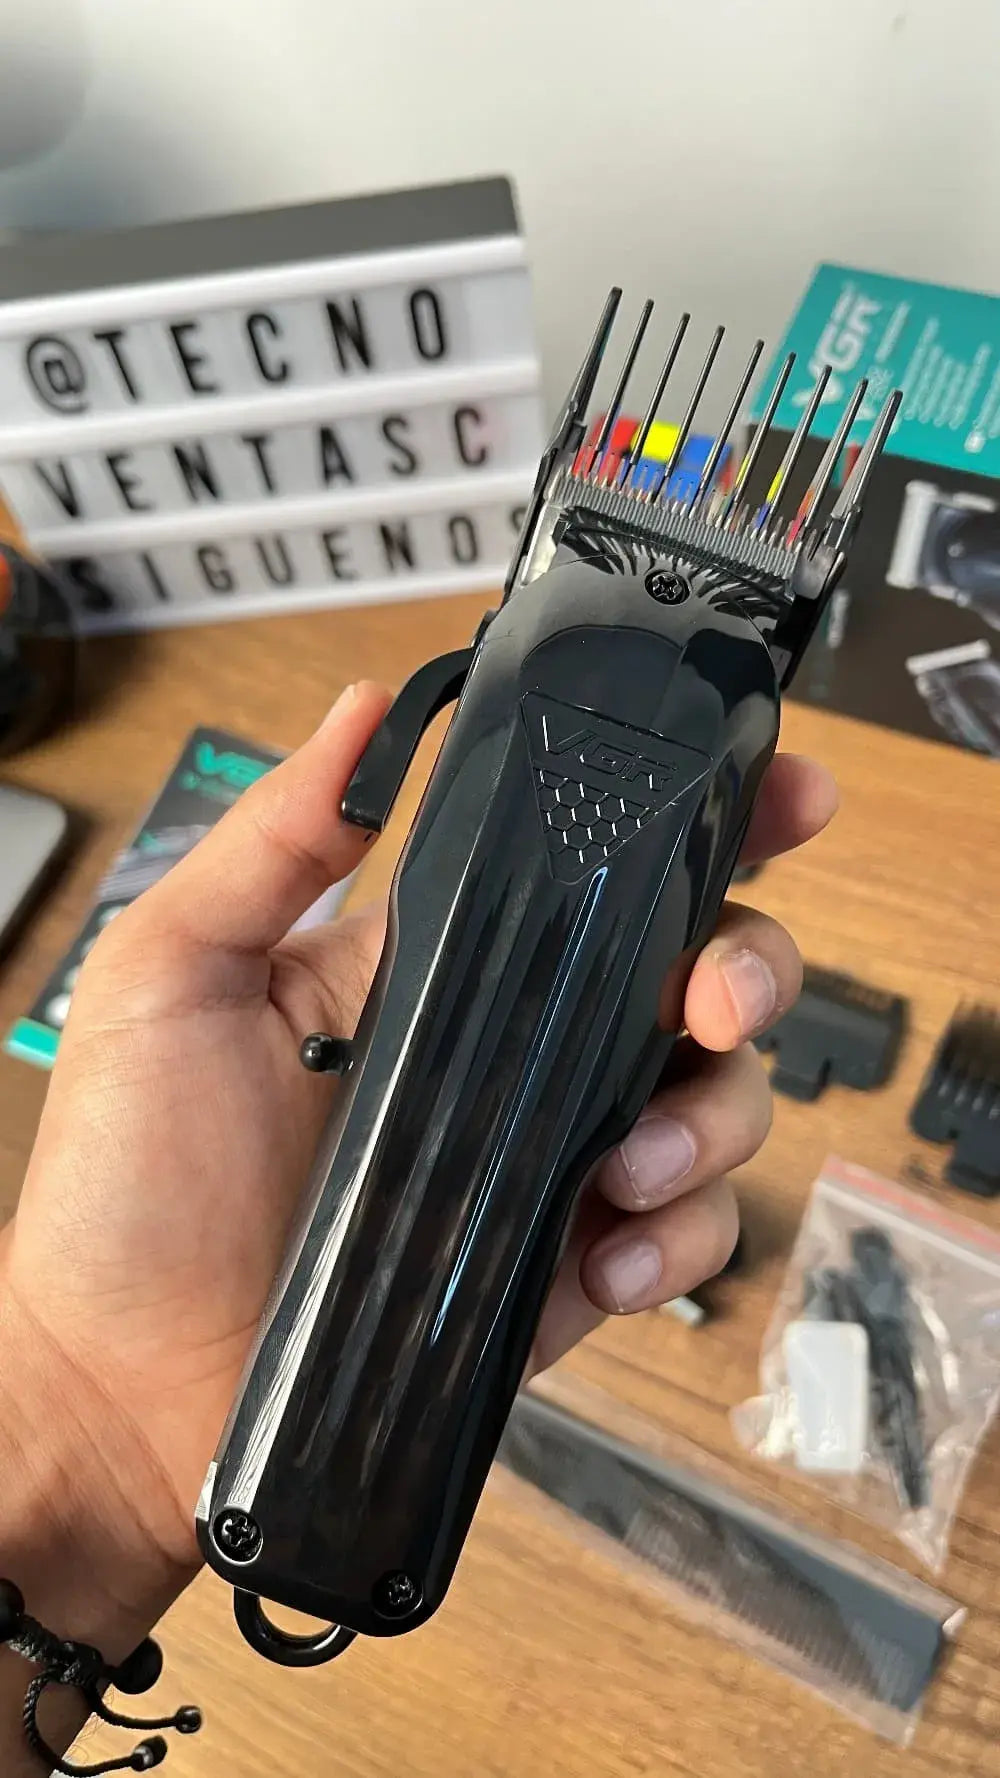 Máquina VGR Black  recortadora de cabello inalámbrica recargable - uso profesional o casero